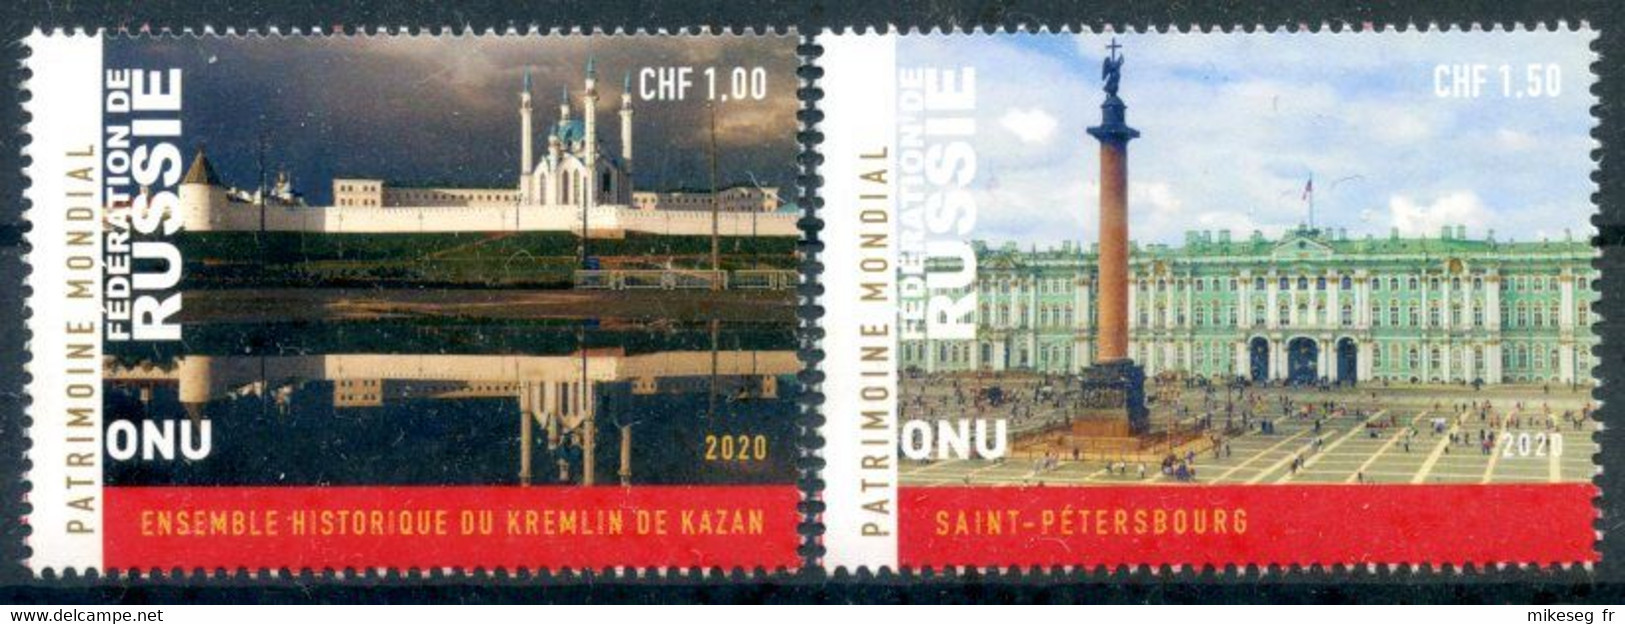 ONU Genève 2020 - Unesco - Patrimoine Mondial Fédération De Russie - 2 Timbres Détachés De Feuille ** - Unused Stamps